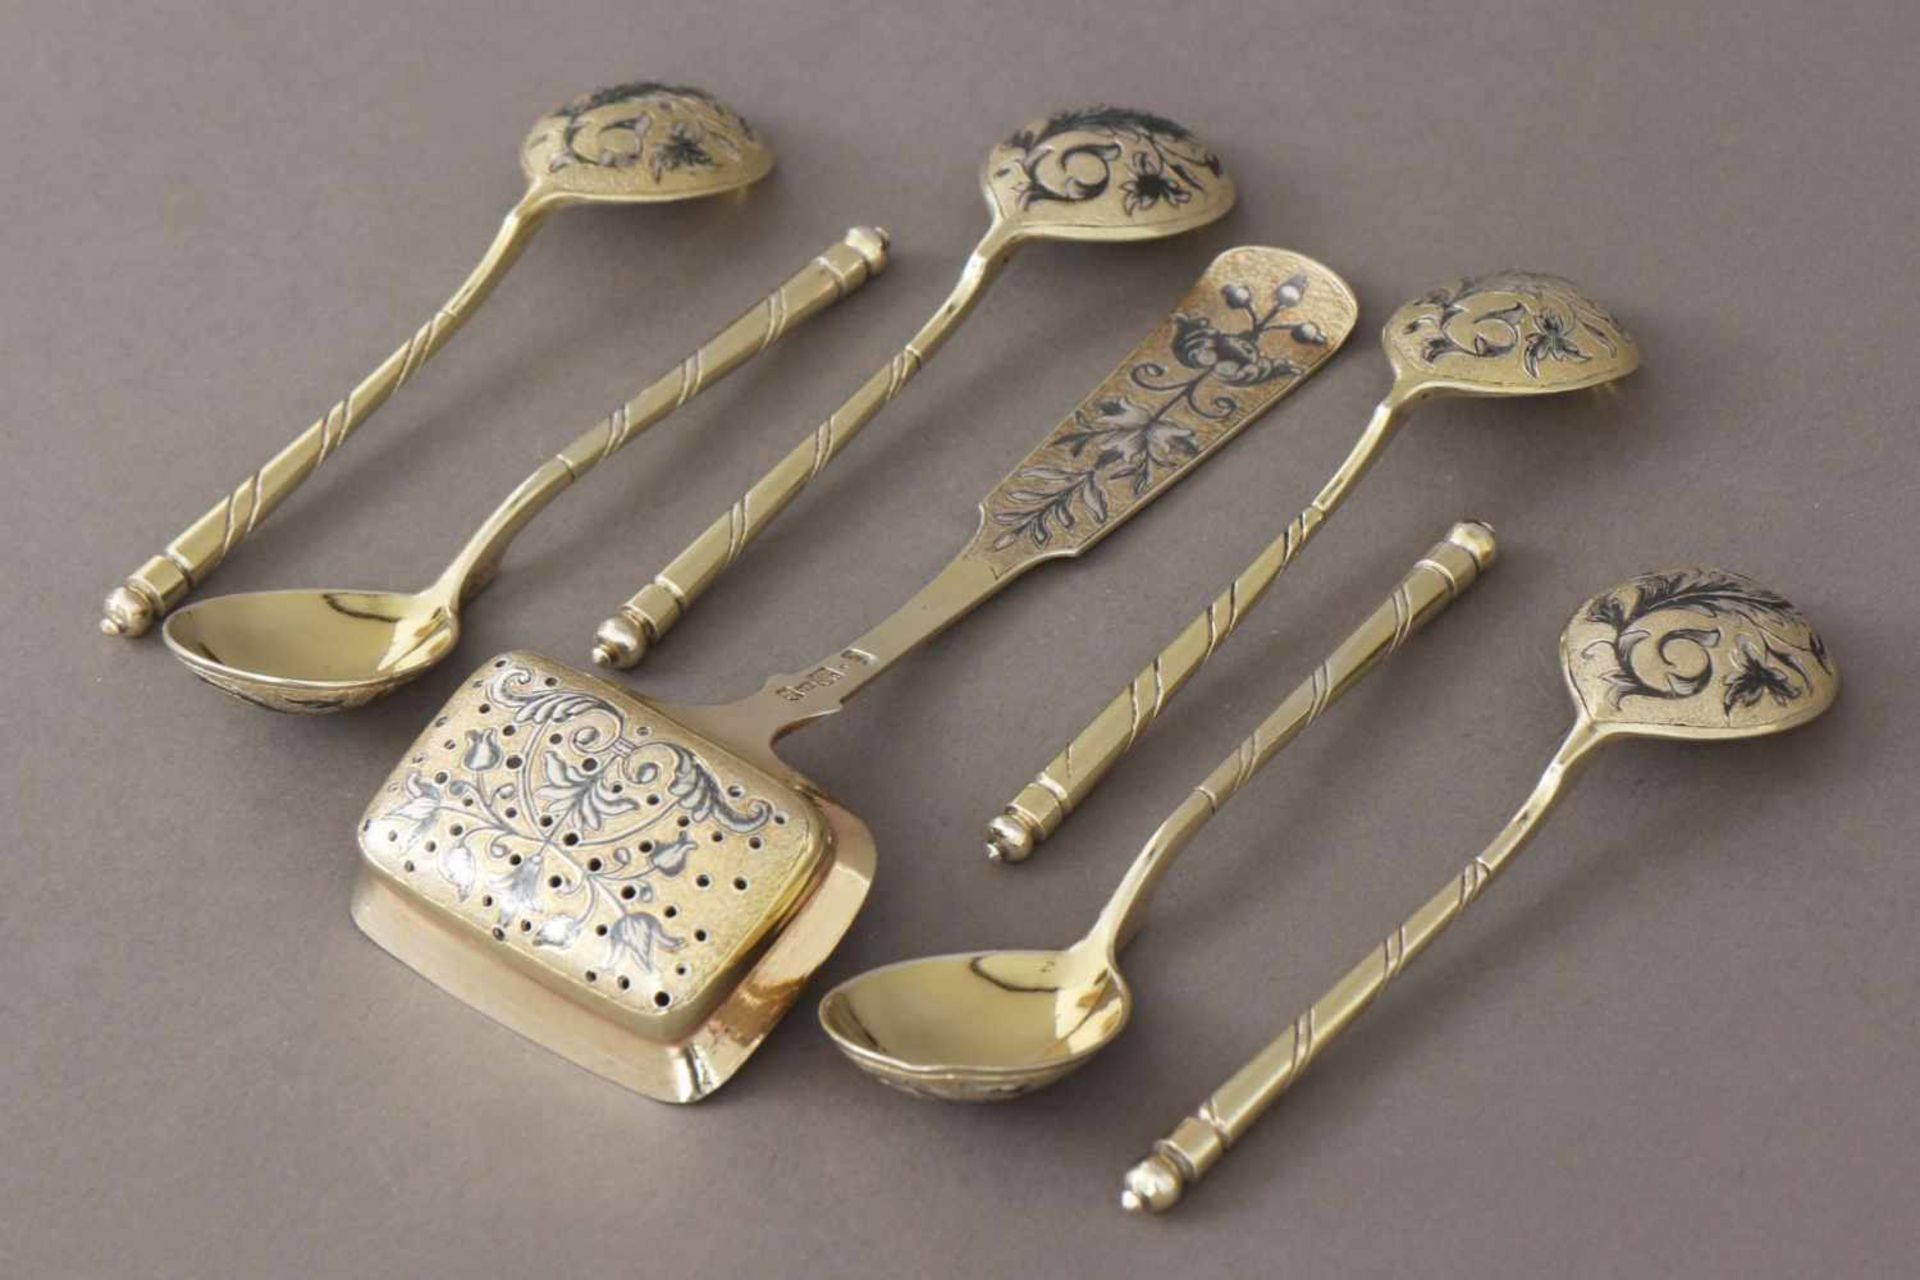 6 russische Teelöffel und 1 Zuckerstreuer Silber, vergoldet und in Tula-Technik dekoriert (